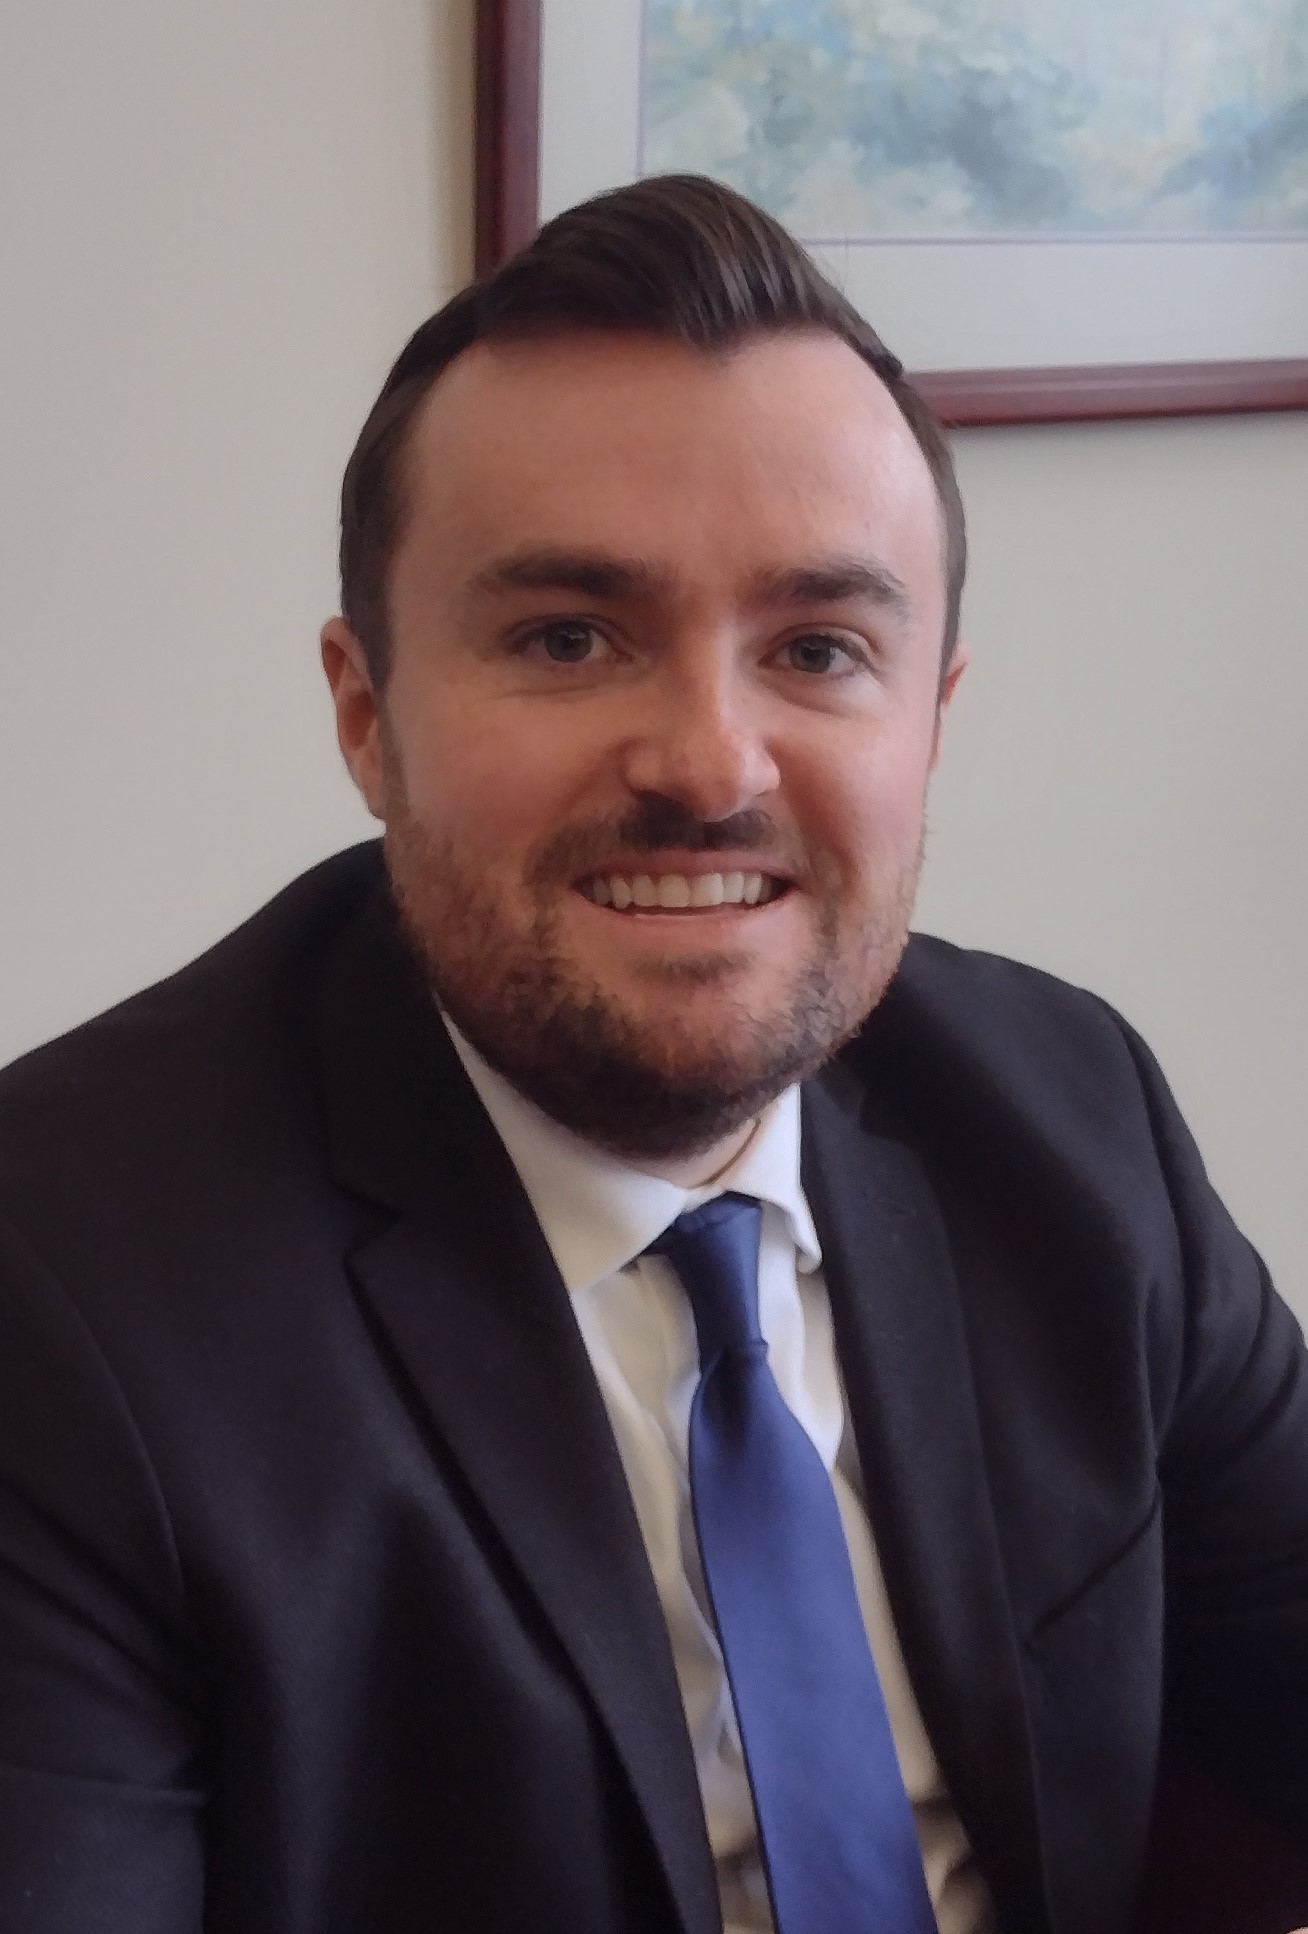 Attorney Michael O'Sullivan